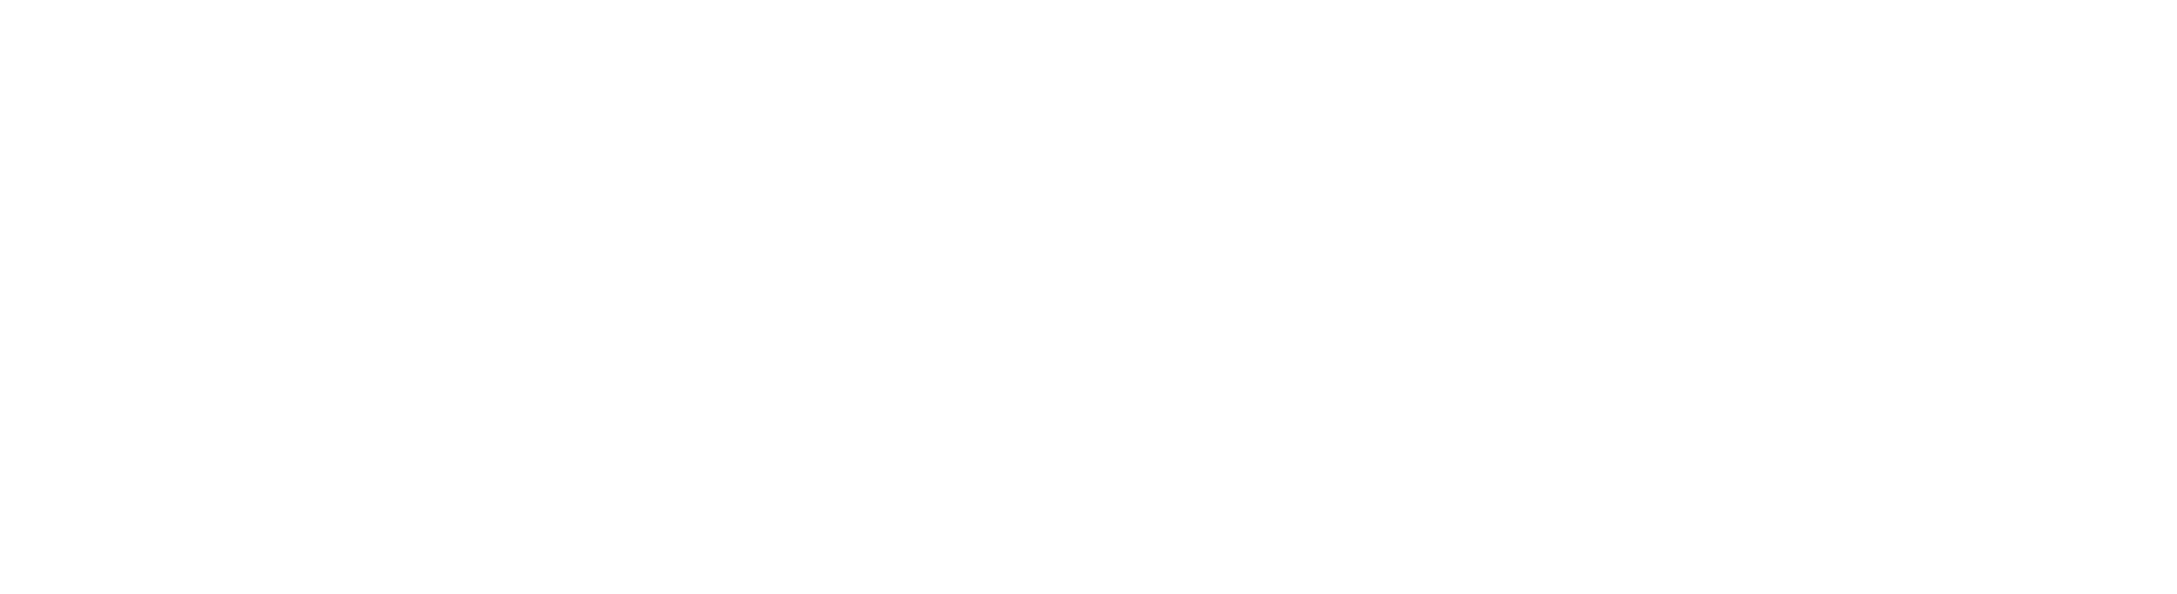 Maptun Pole Position